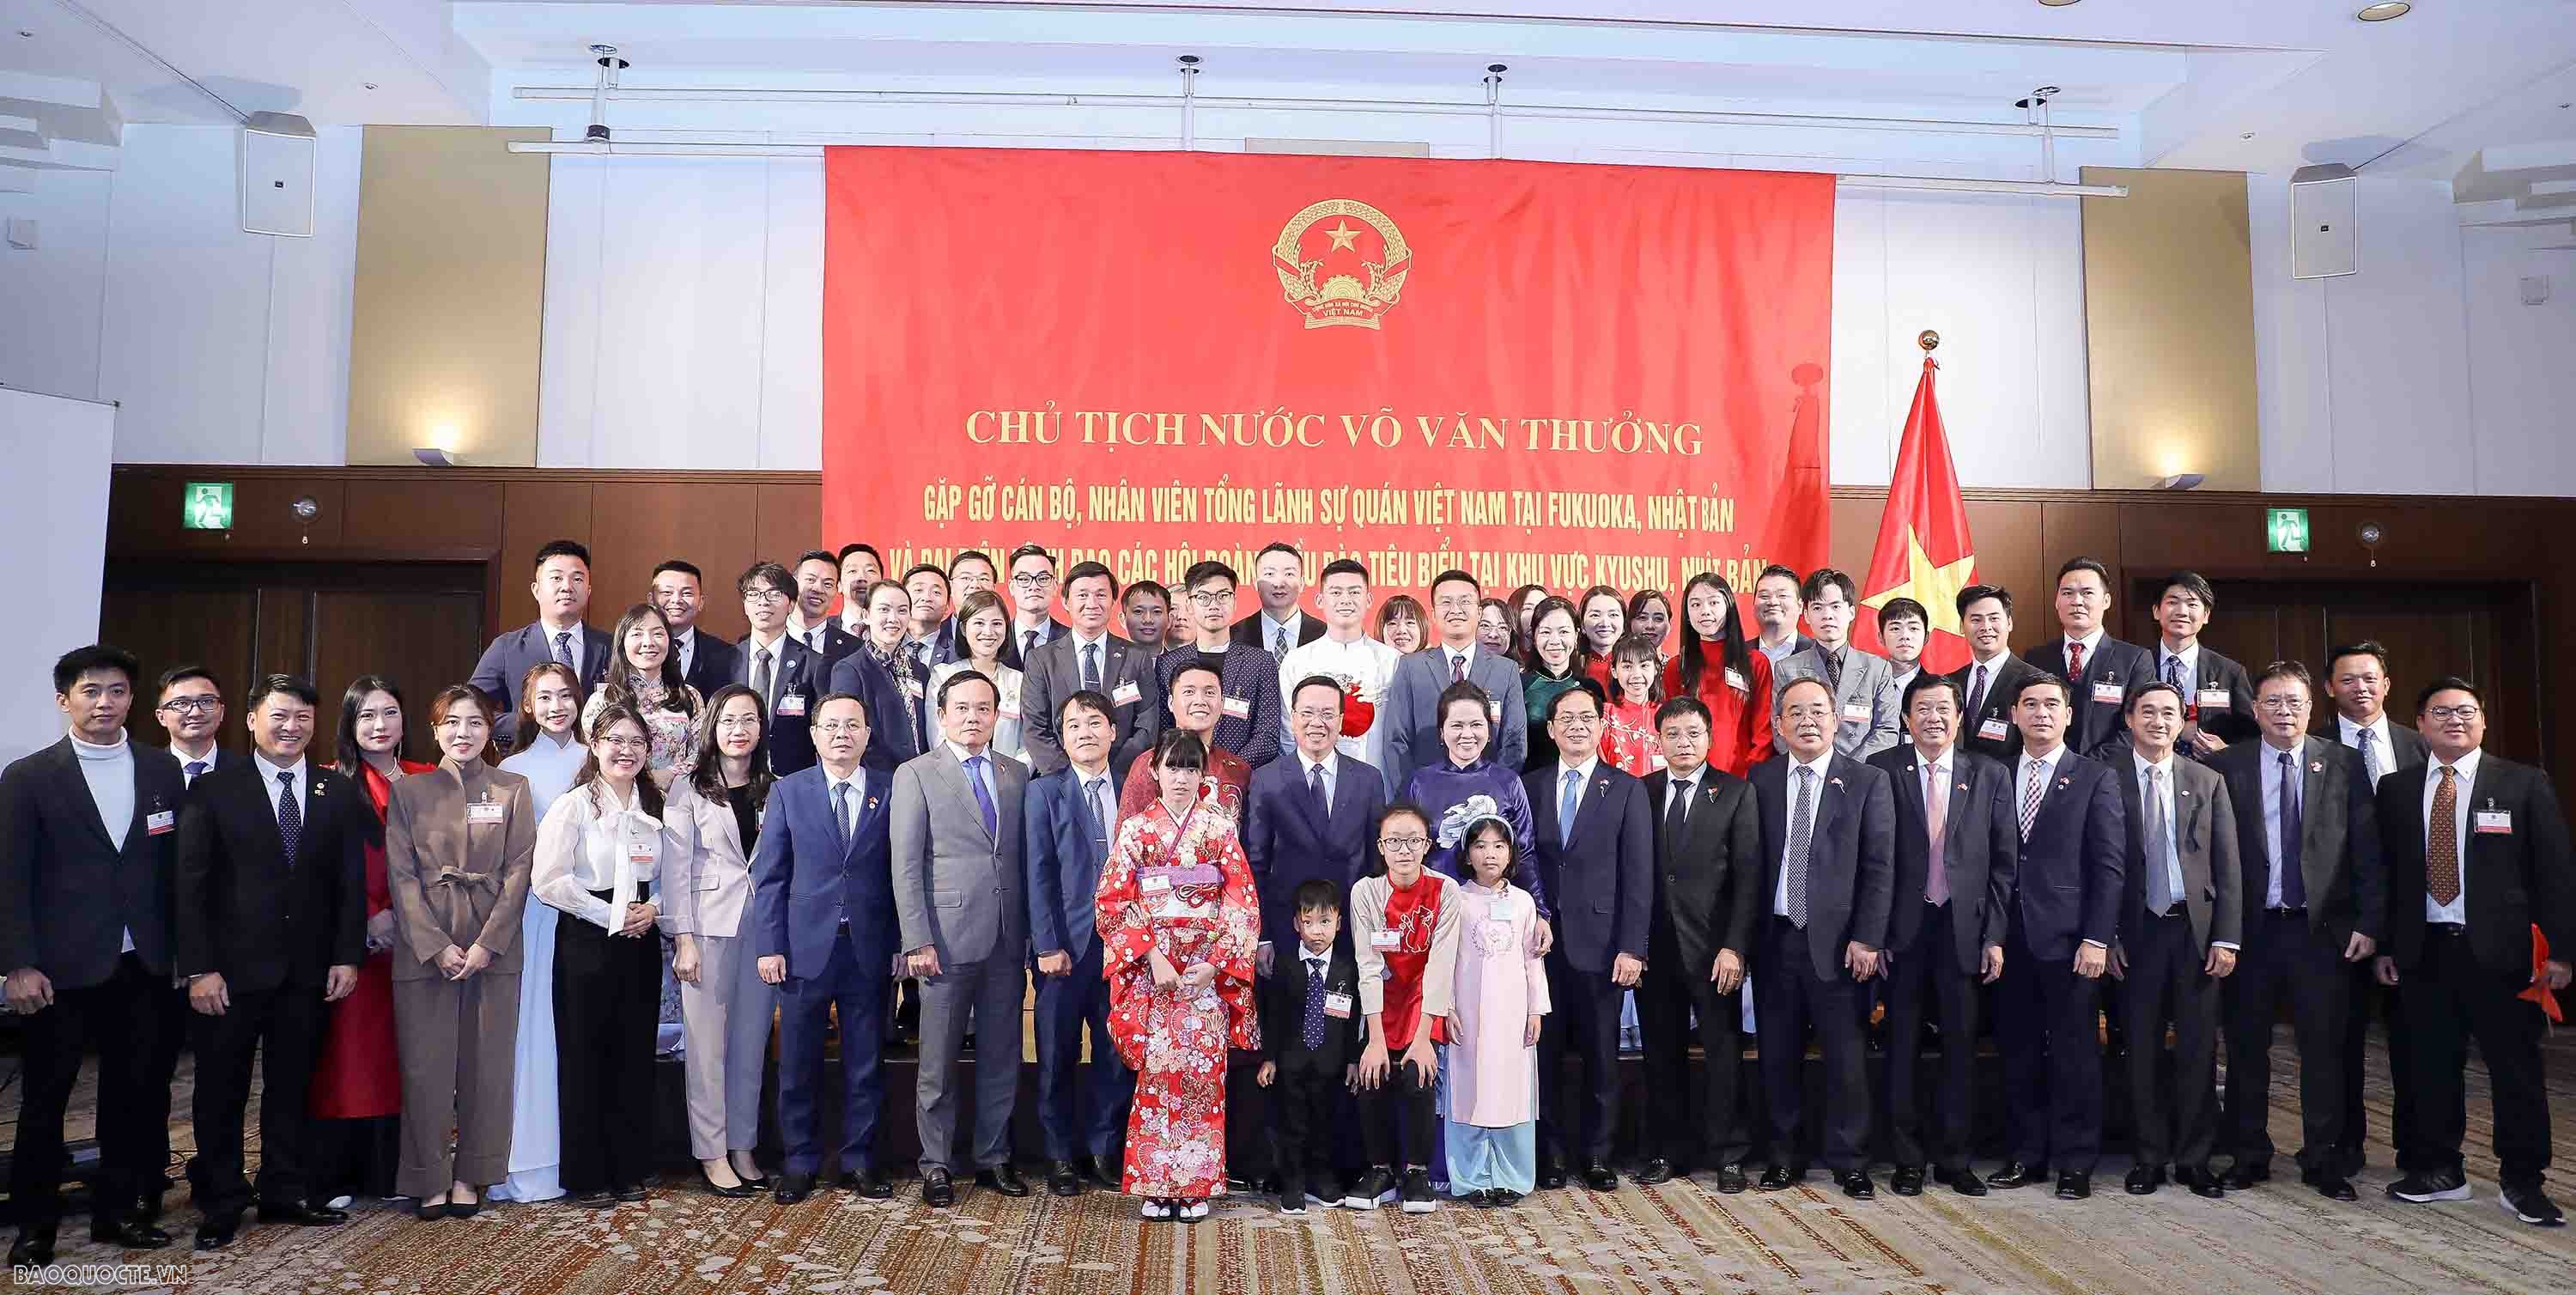 Chủ tịch nước: Mỗi người Việt Nam ở nước ngoài cần tiếp tục giữ gìn bản sắc văn hoá dân tộc